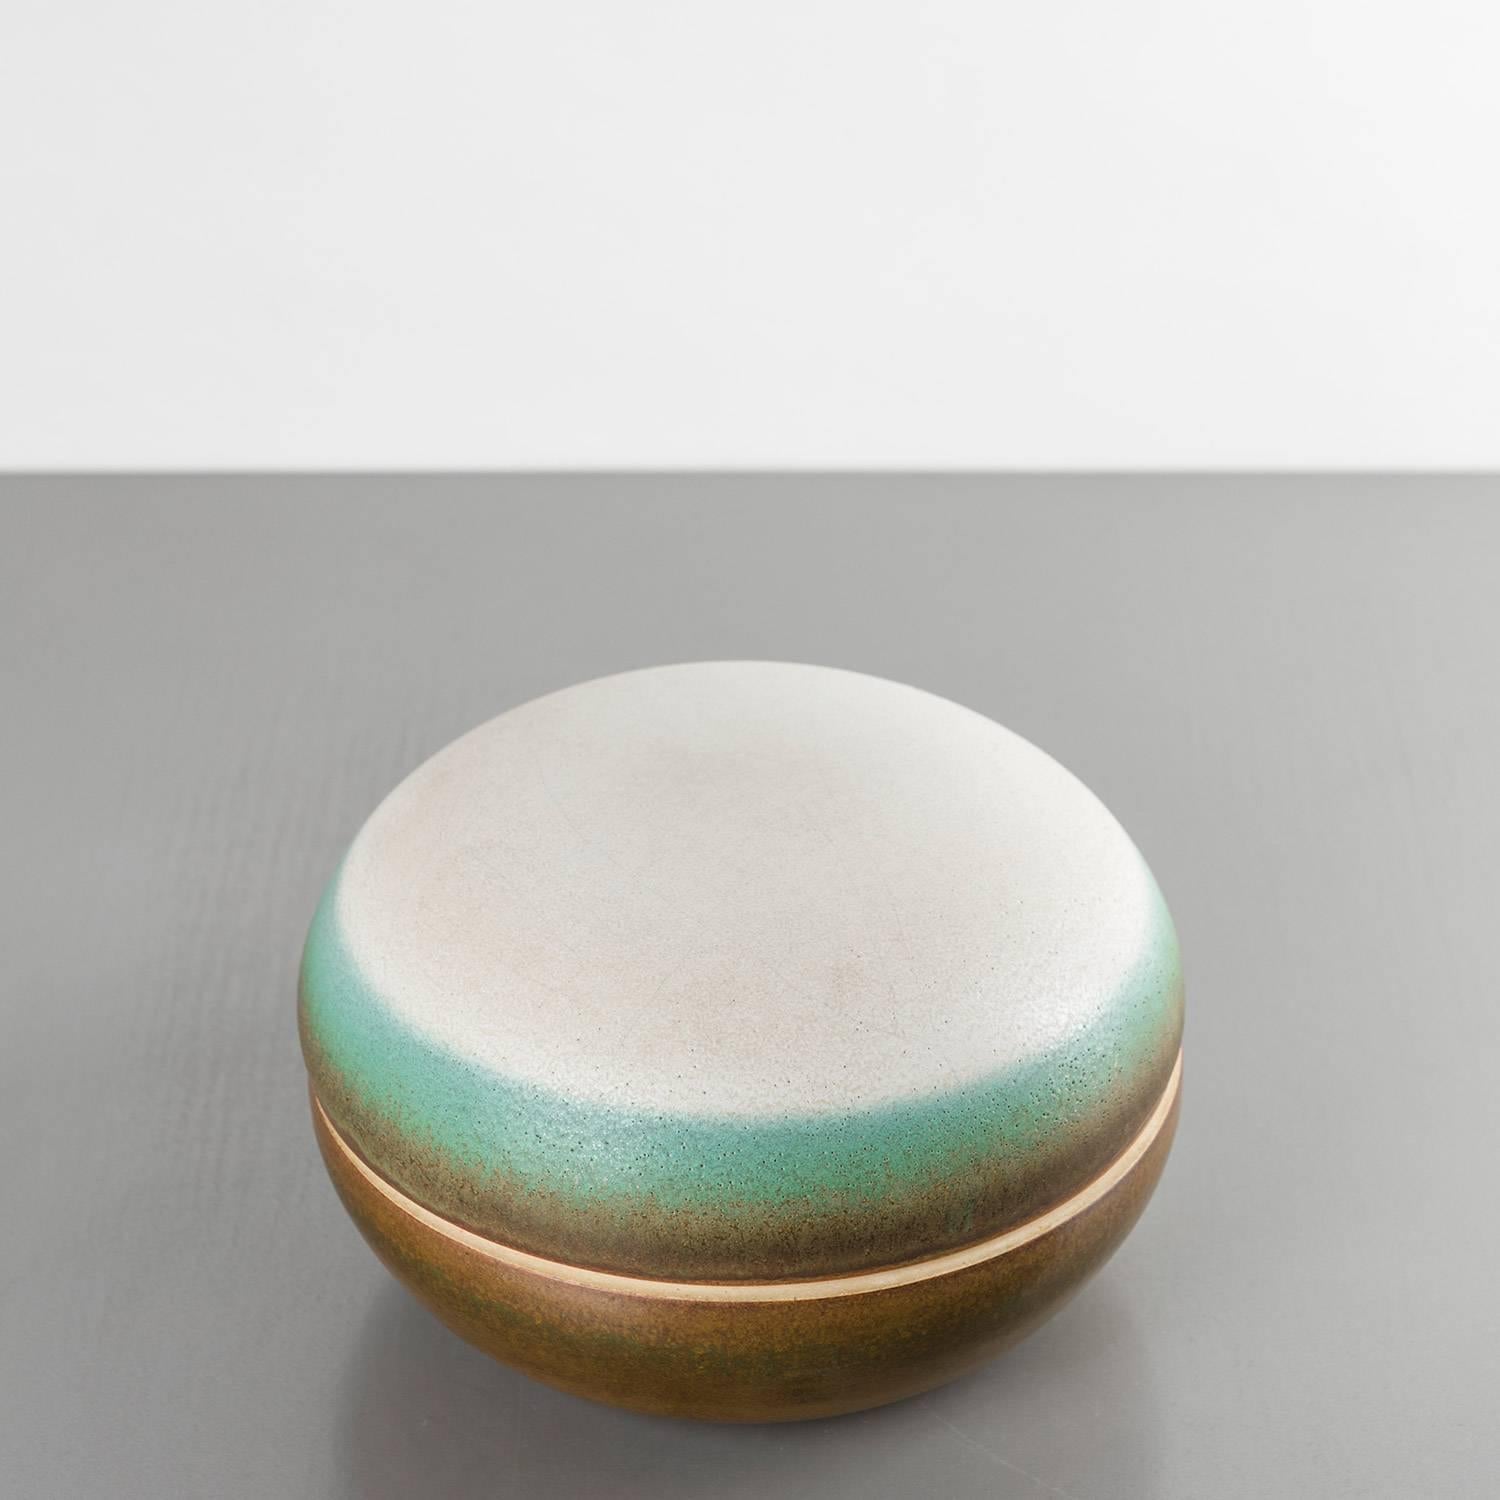 Ceramic box by Nanni Valentini for Ceramica Arcore.